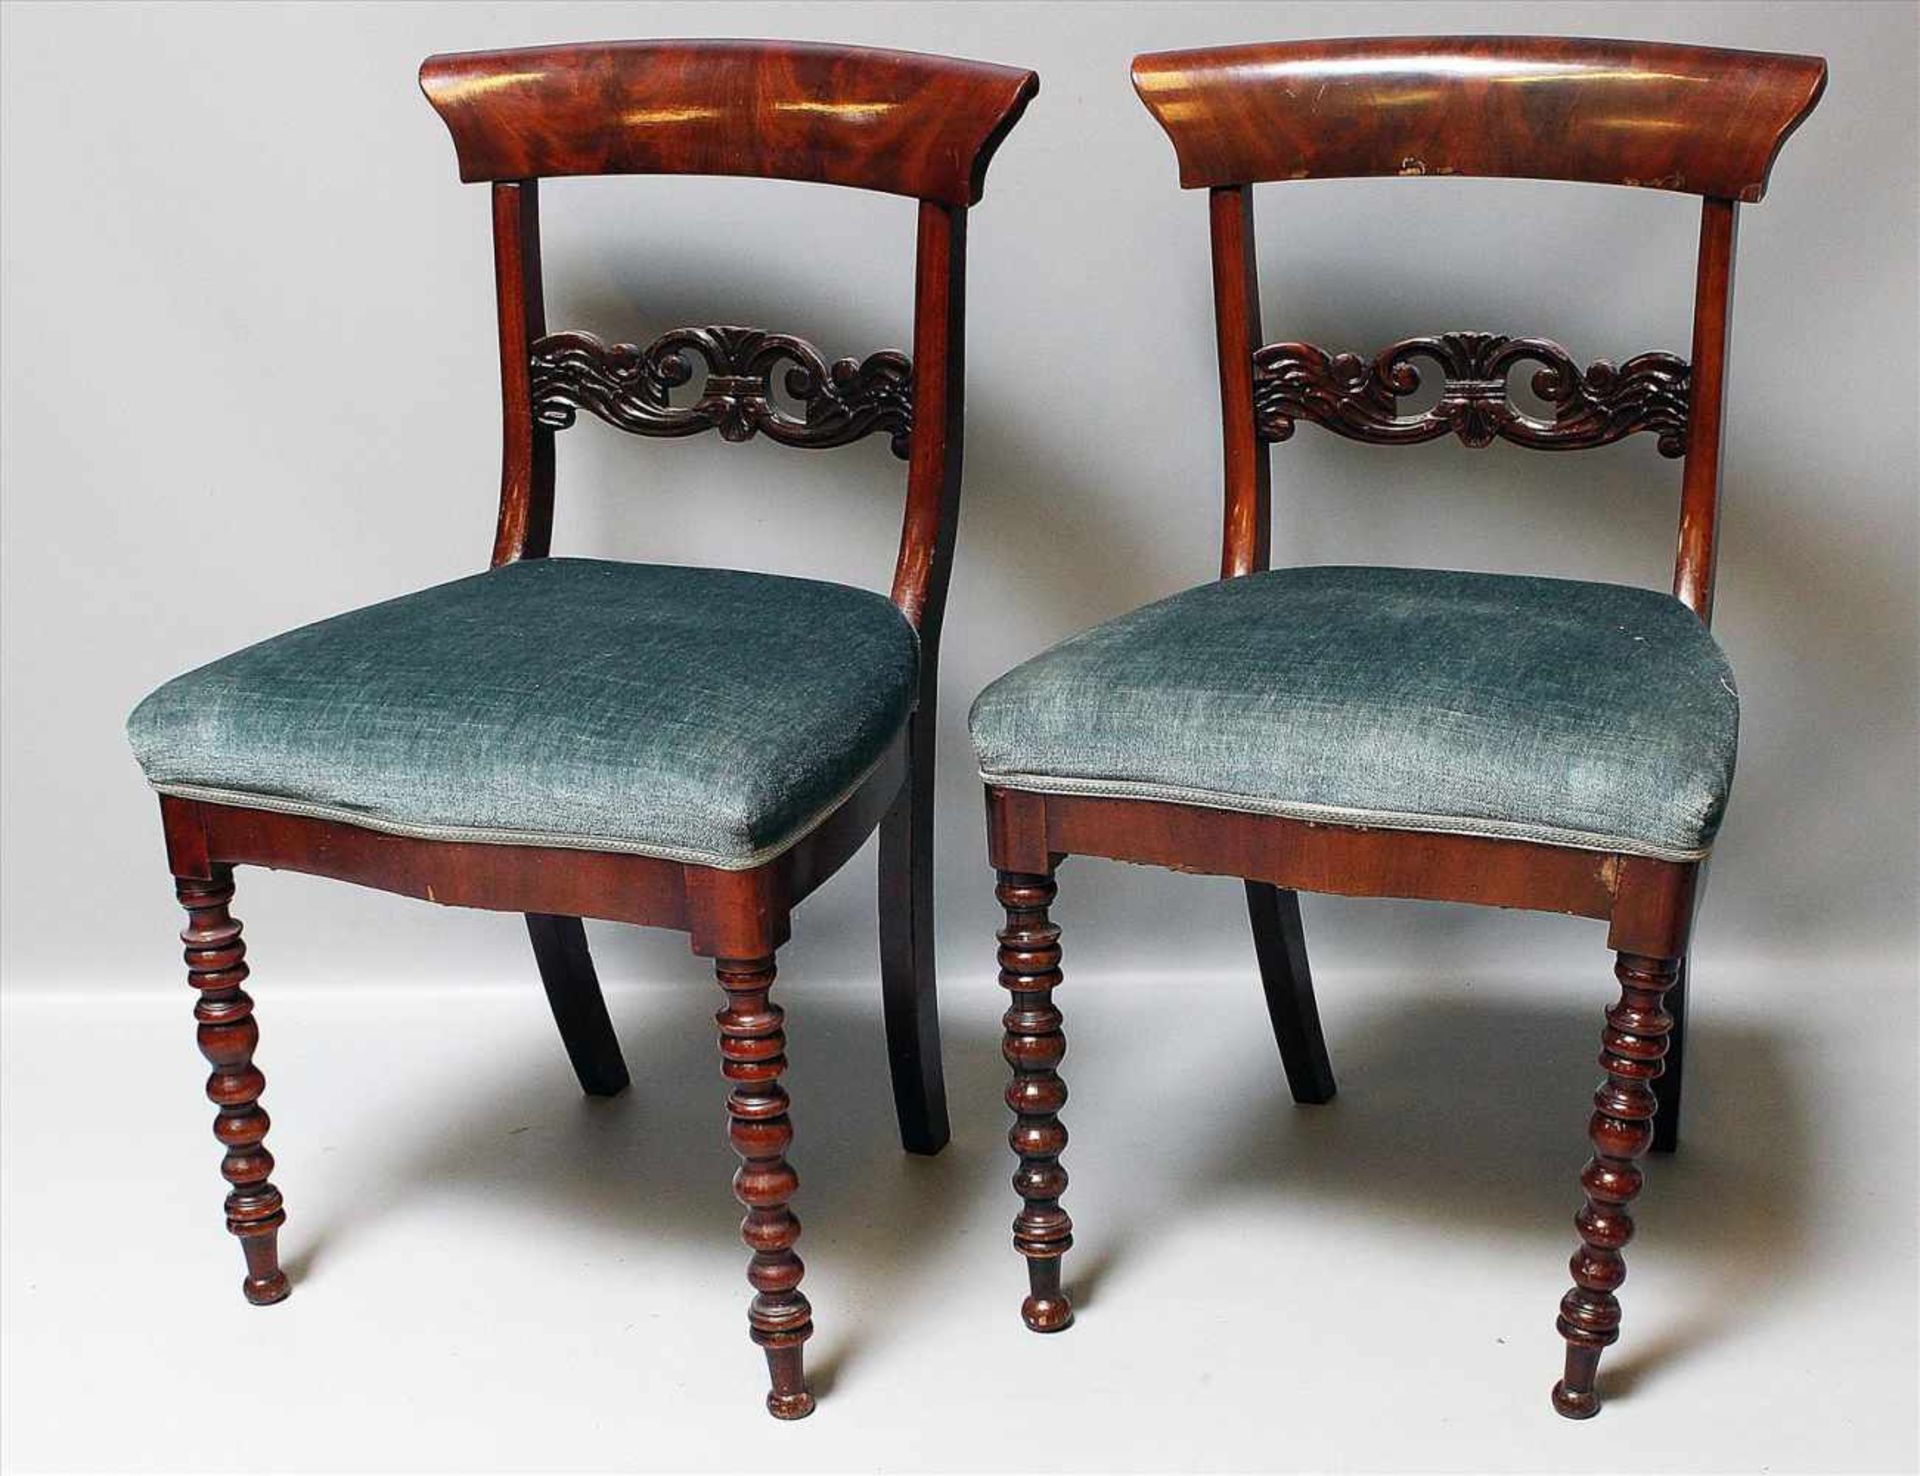 Paar Spätbiedermeier-Stühle.Mahagoni. Sitz gepolstert. Alters- und Gebrauchsspuren. Mitte 19. Jh. H.